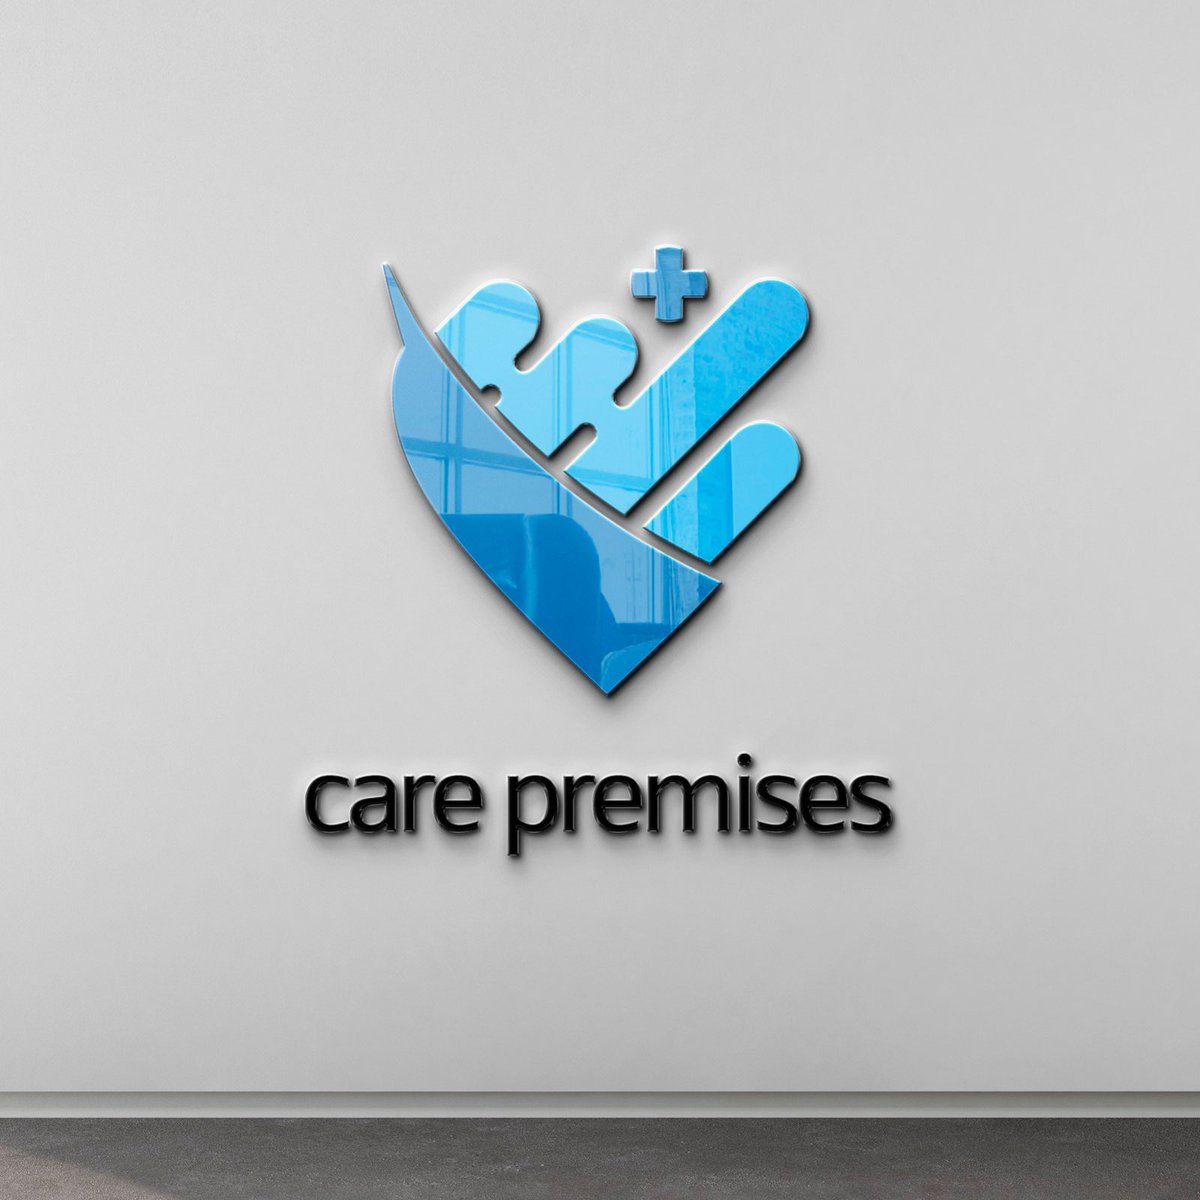 #CarePremises  #Medicalbilling  #RCM